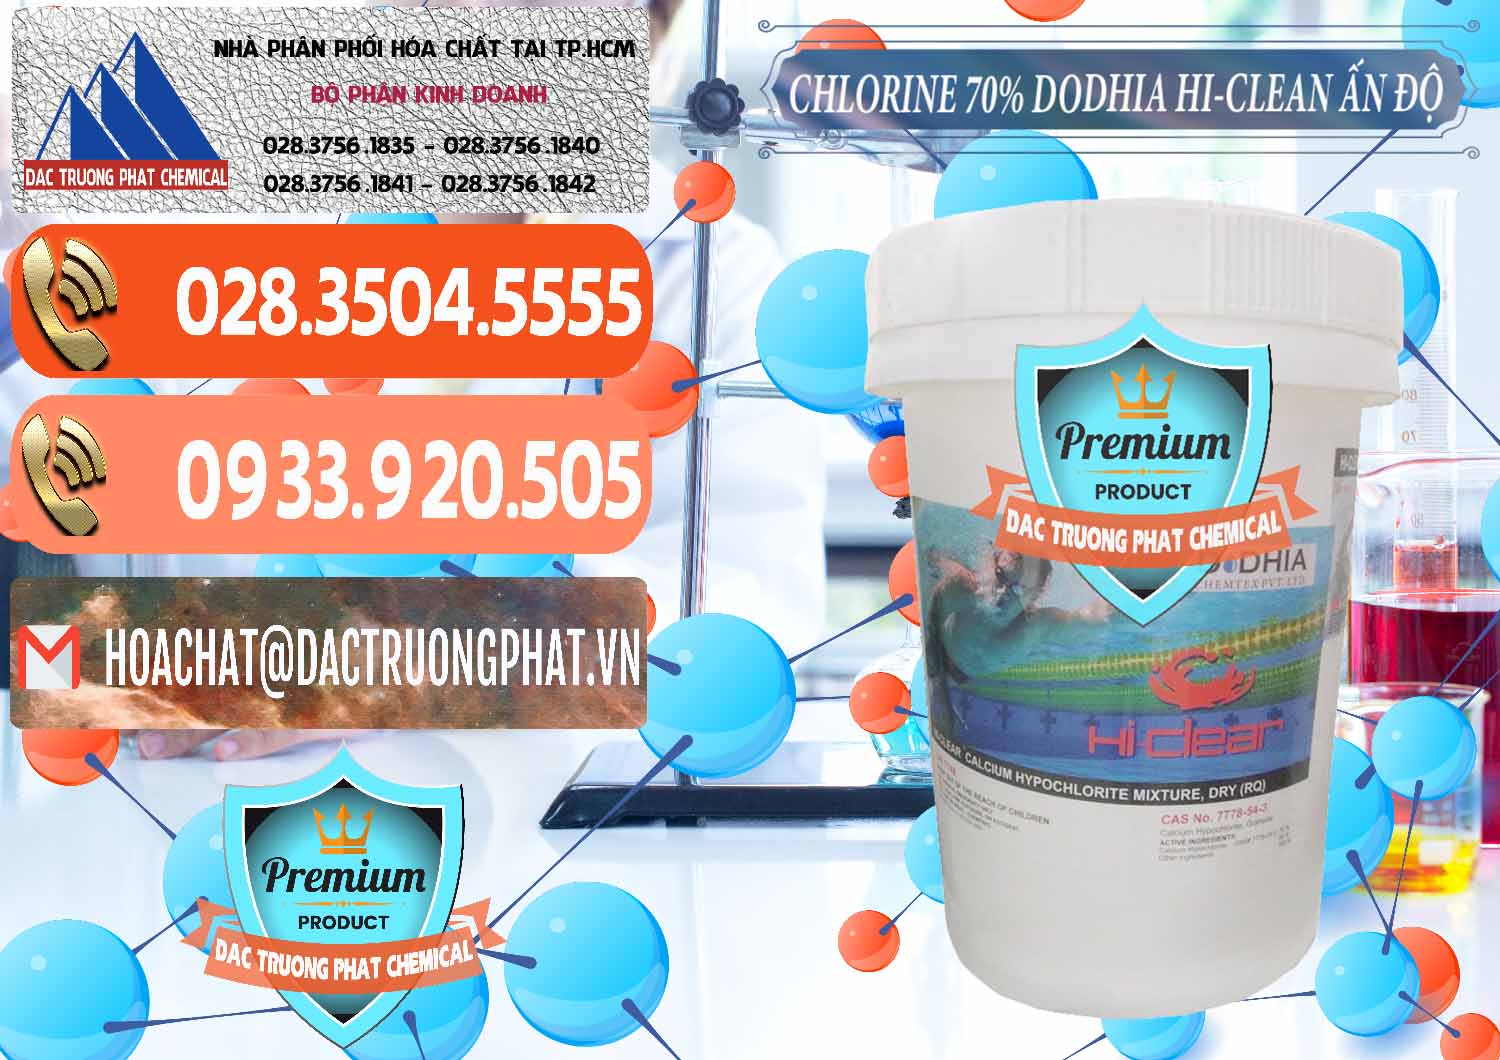 Đơn vị chuyên nhập khẩu ( bán ) Chlorine – Clorin 70% Dodhia Hi-Clean Ấn Độ India - 0214 - Cty chuyên cung cấp & kinh doanh hóa chất tại TP.HCM - hoachatmientay.com